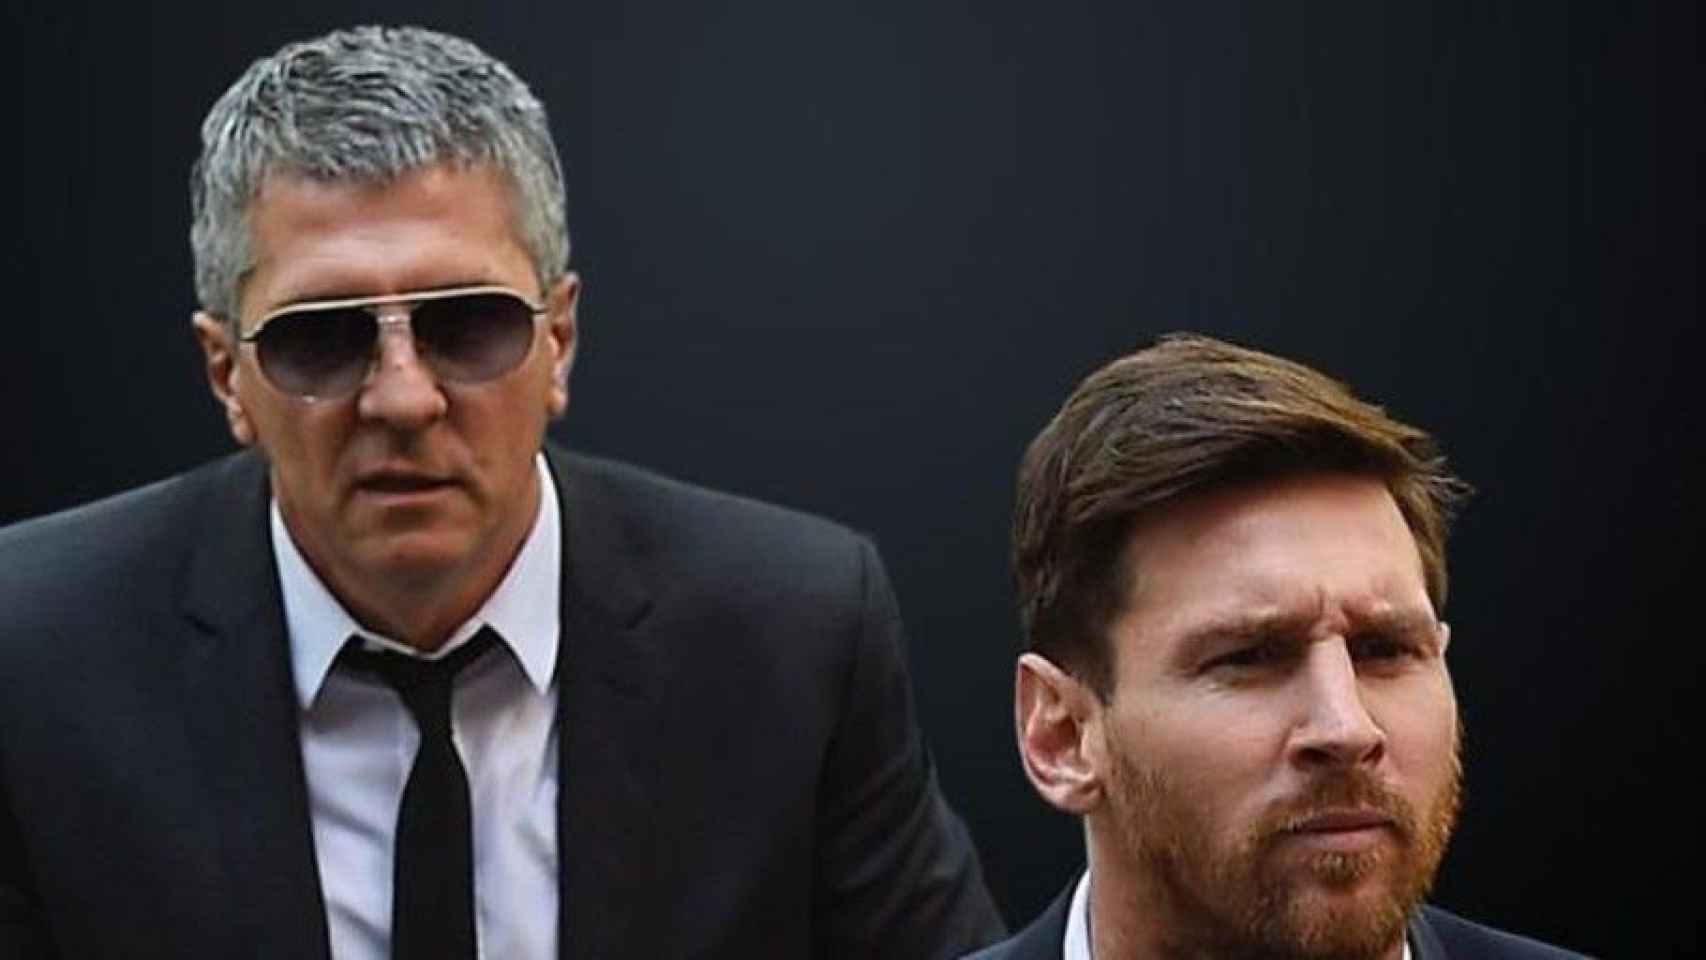 Jorge Messi y Leo Messi, durante un juicio en Argentina